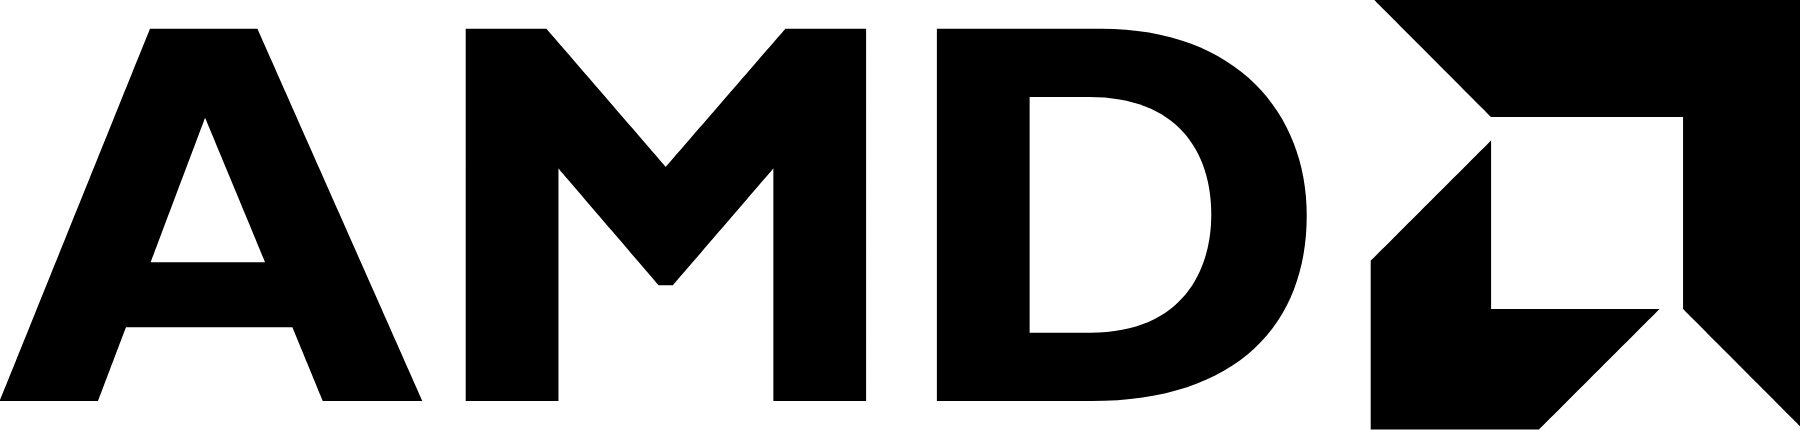 AMD logo large (transparent PNG)